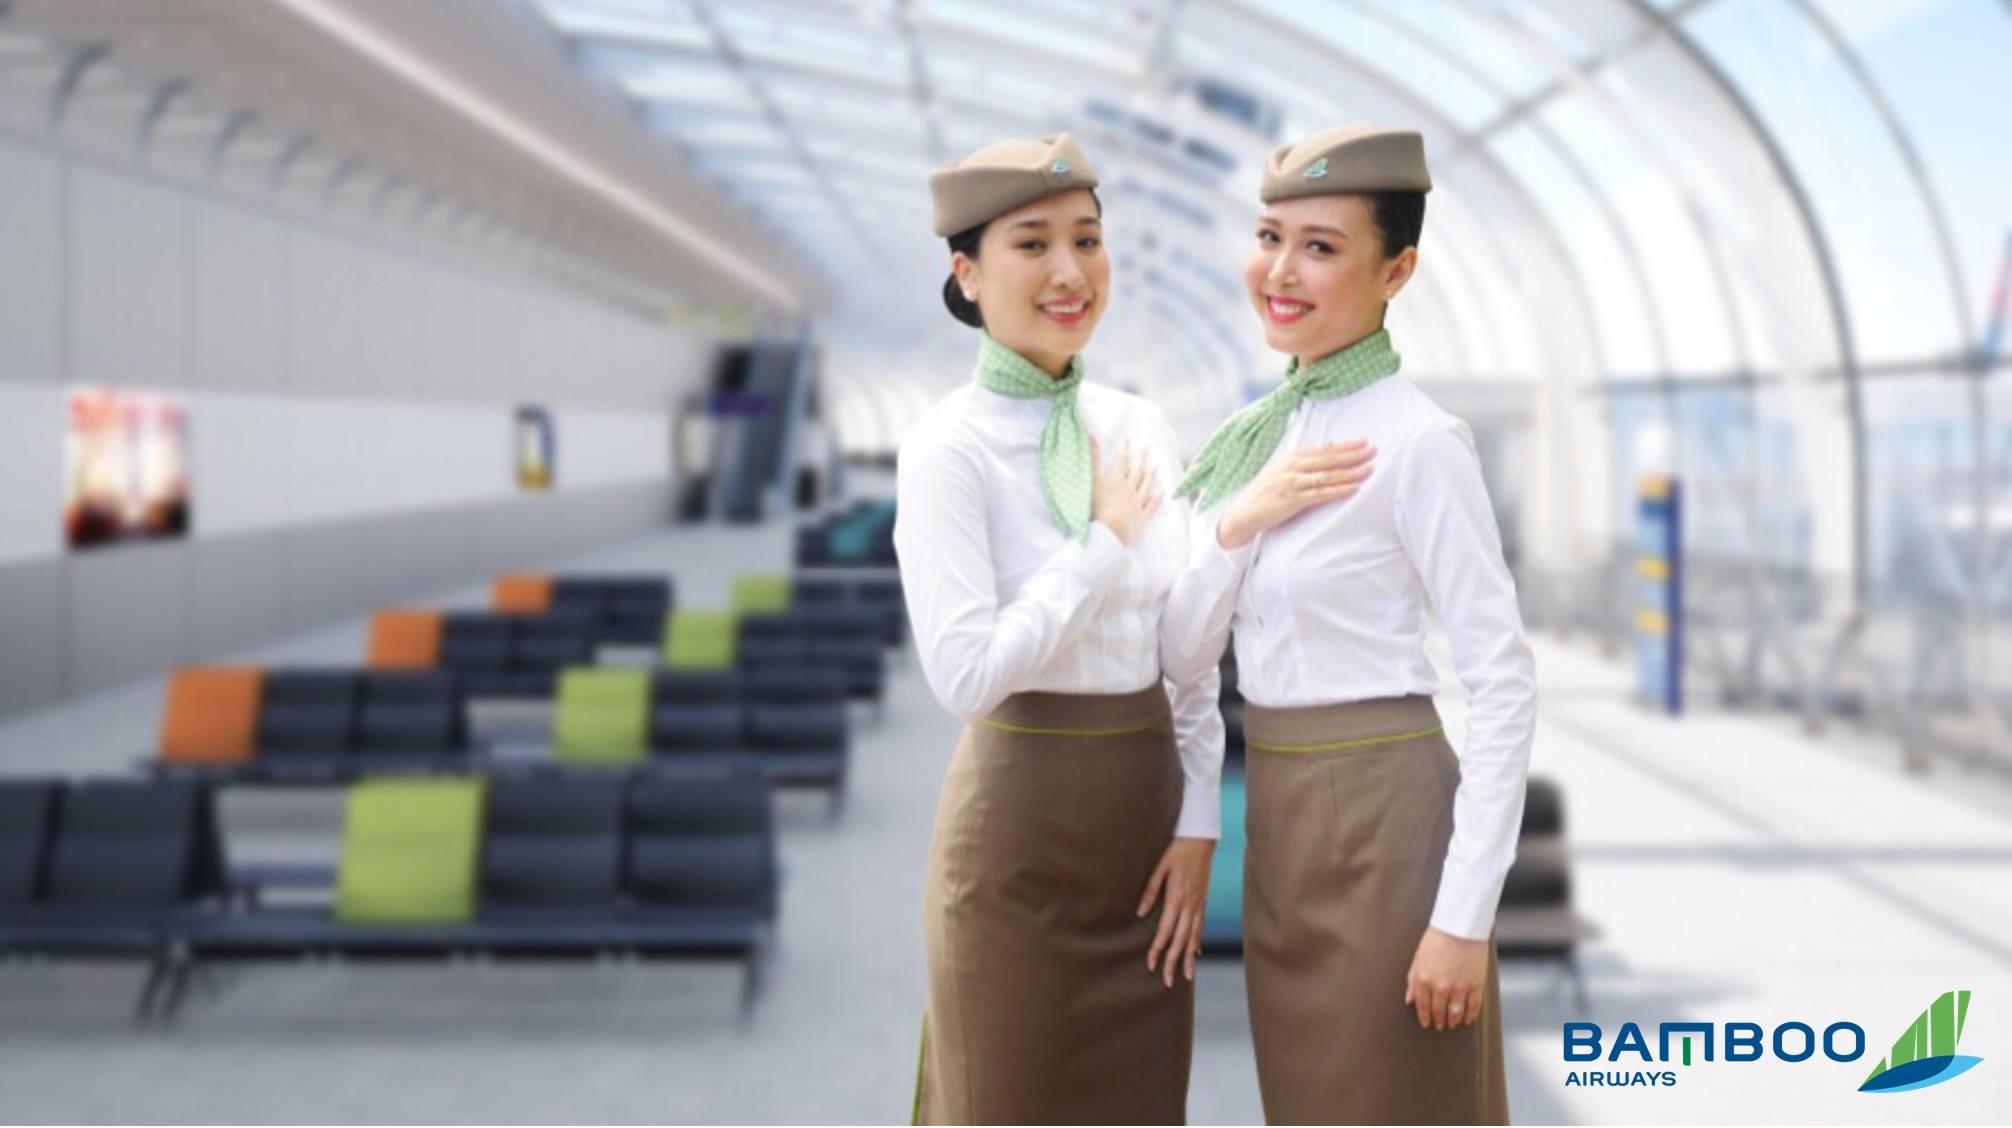 TBamboo Airways tuyển dụng Chuyên viên Giám sát hàng hoá tại Cần Thơ